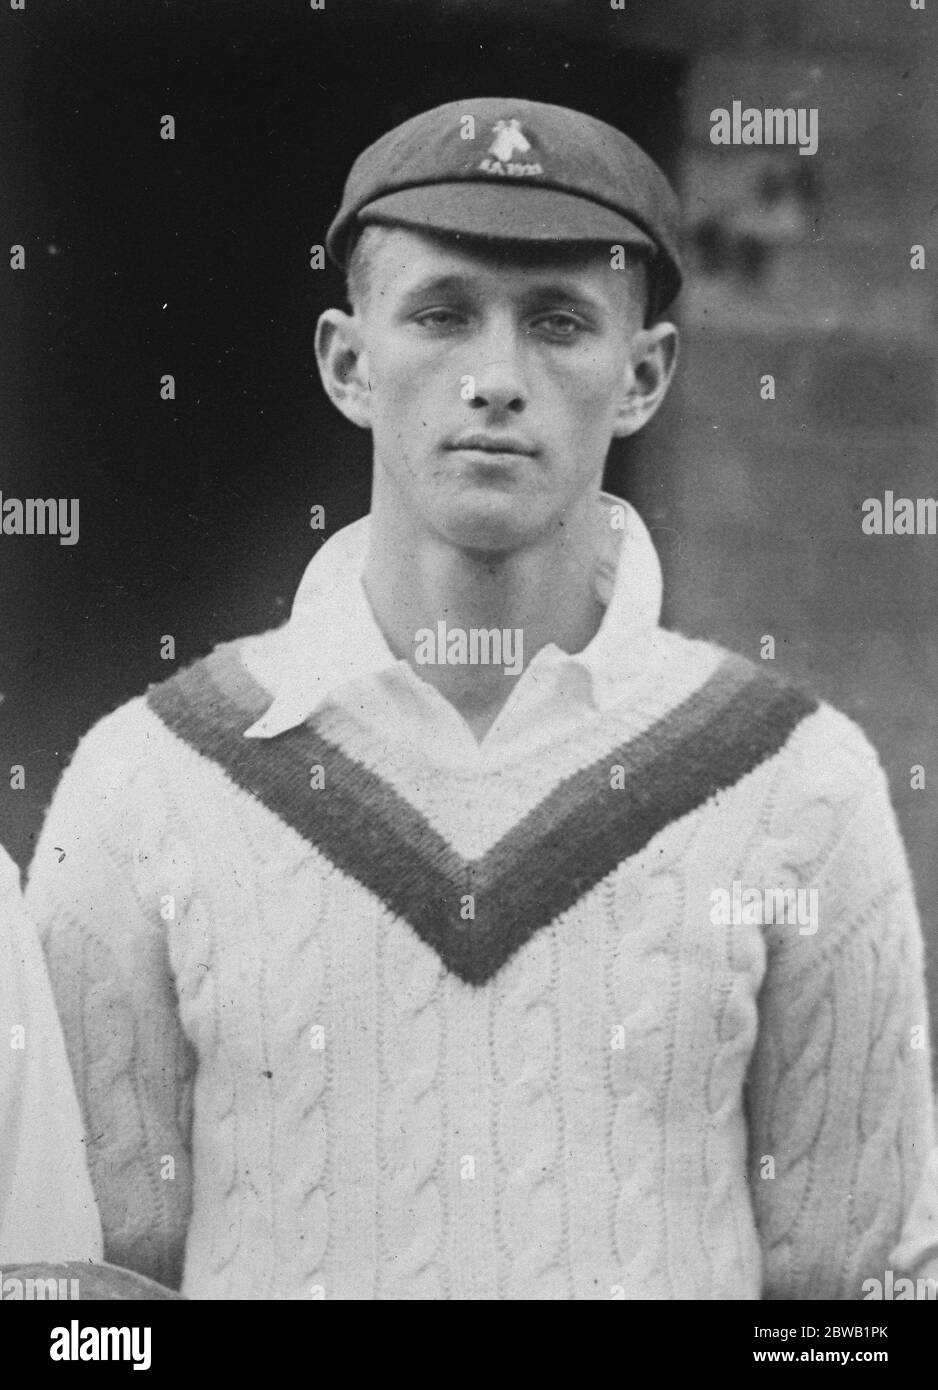 Eiulf Peter Buster Nupen südafrikanischer Bowler, der die meisten Wickets gegen die MCC im ersten Testspiel gegen die MCC 25 Januar 1923 nahm Stockfoto